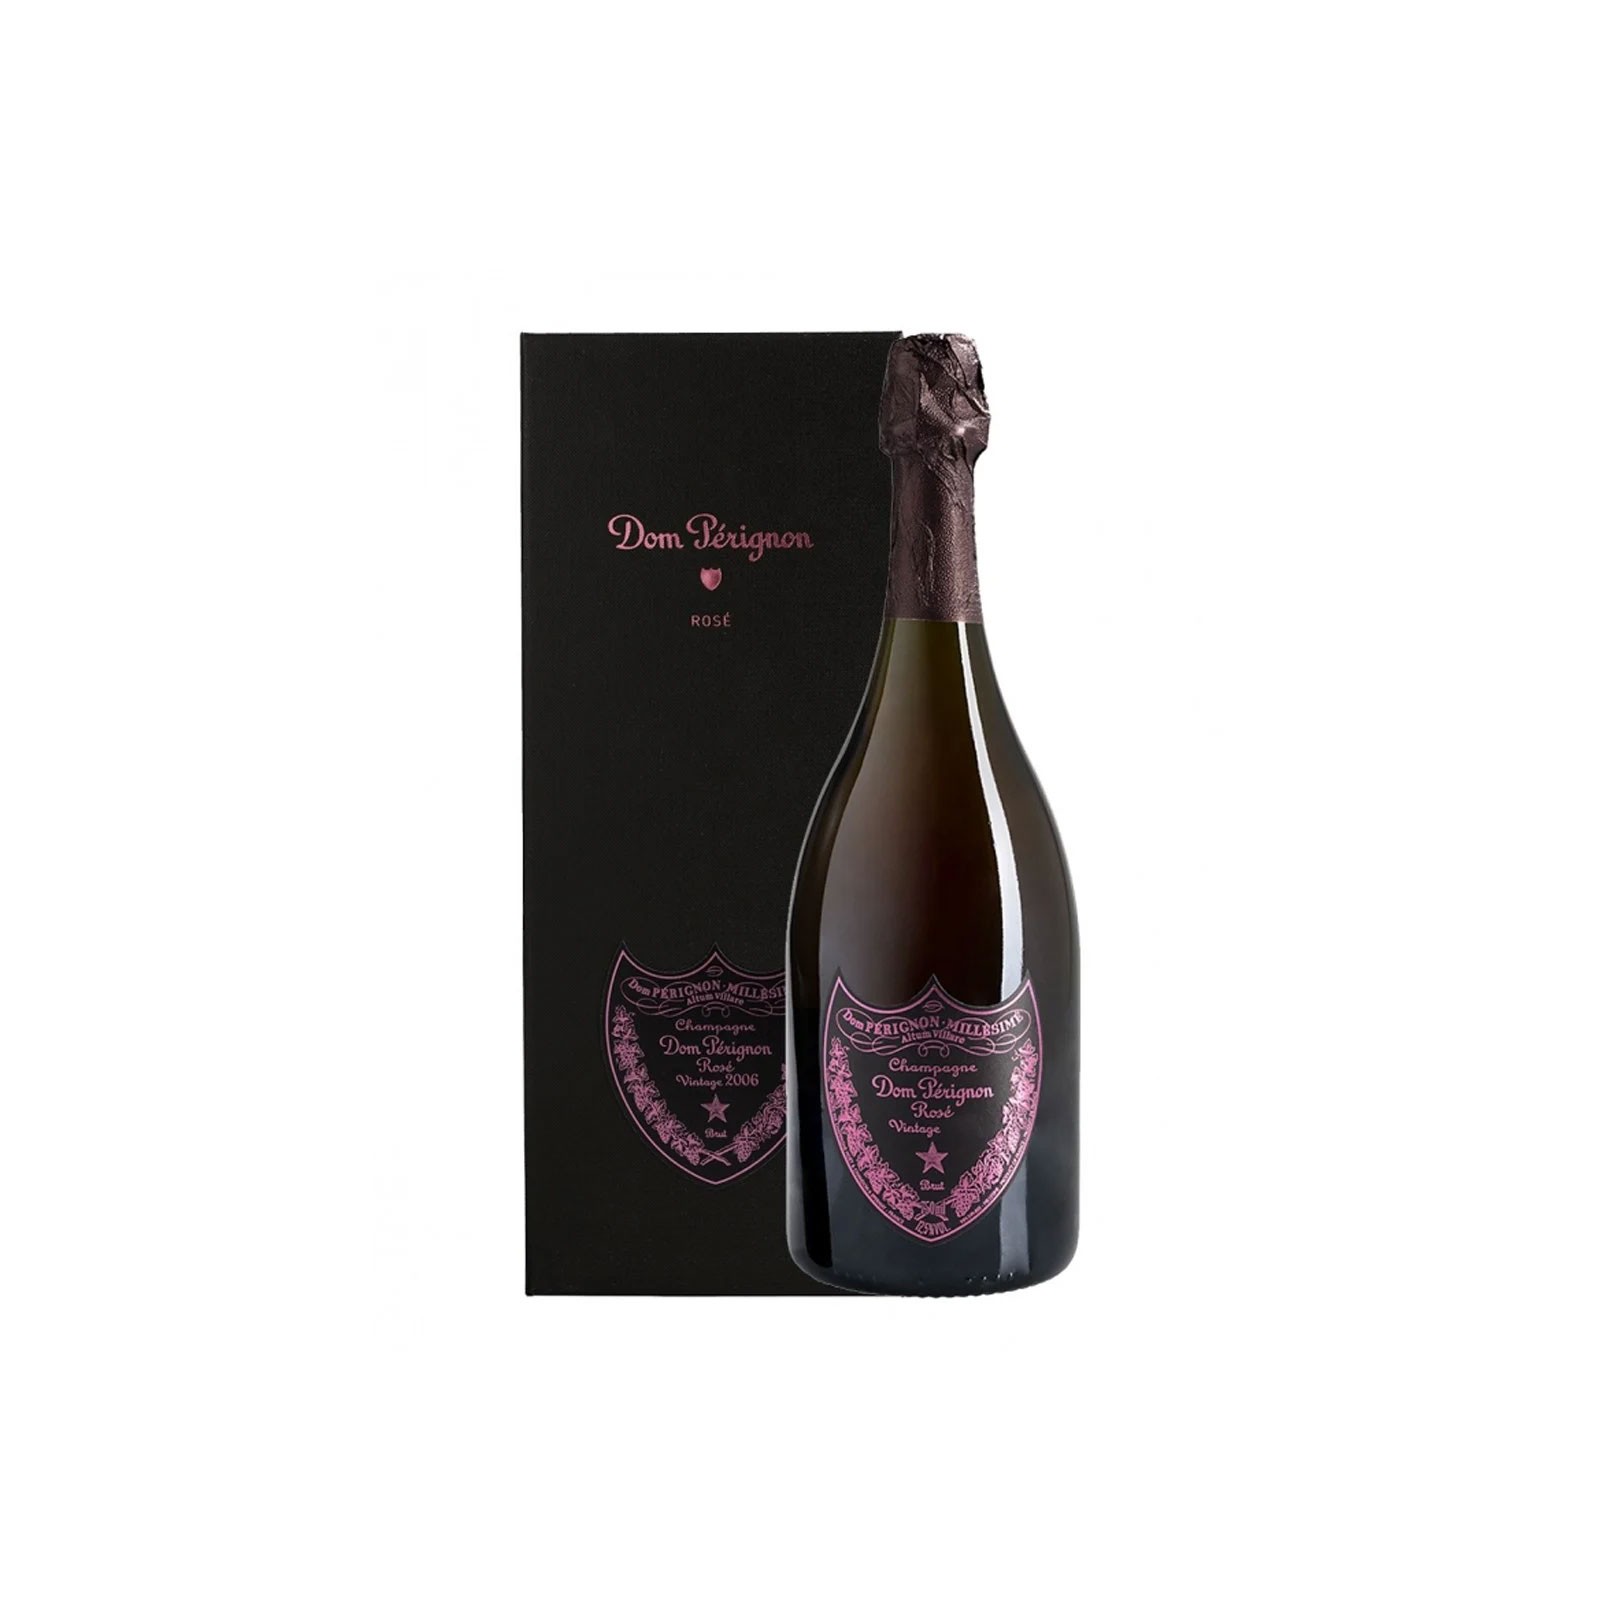 Champagne Dom Pérignon Rosé Vintage 2008 cofanetto, Moët & Chandon